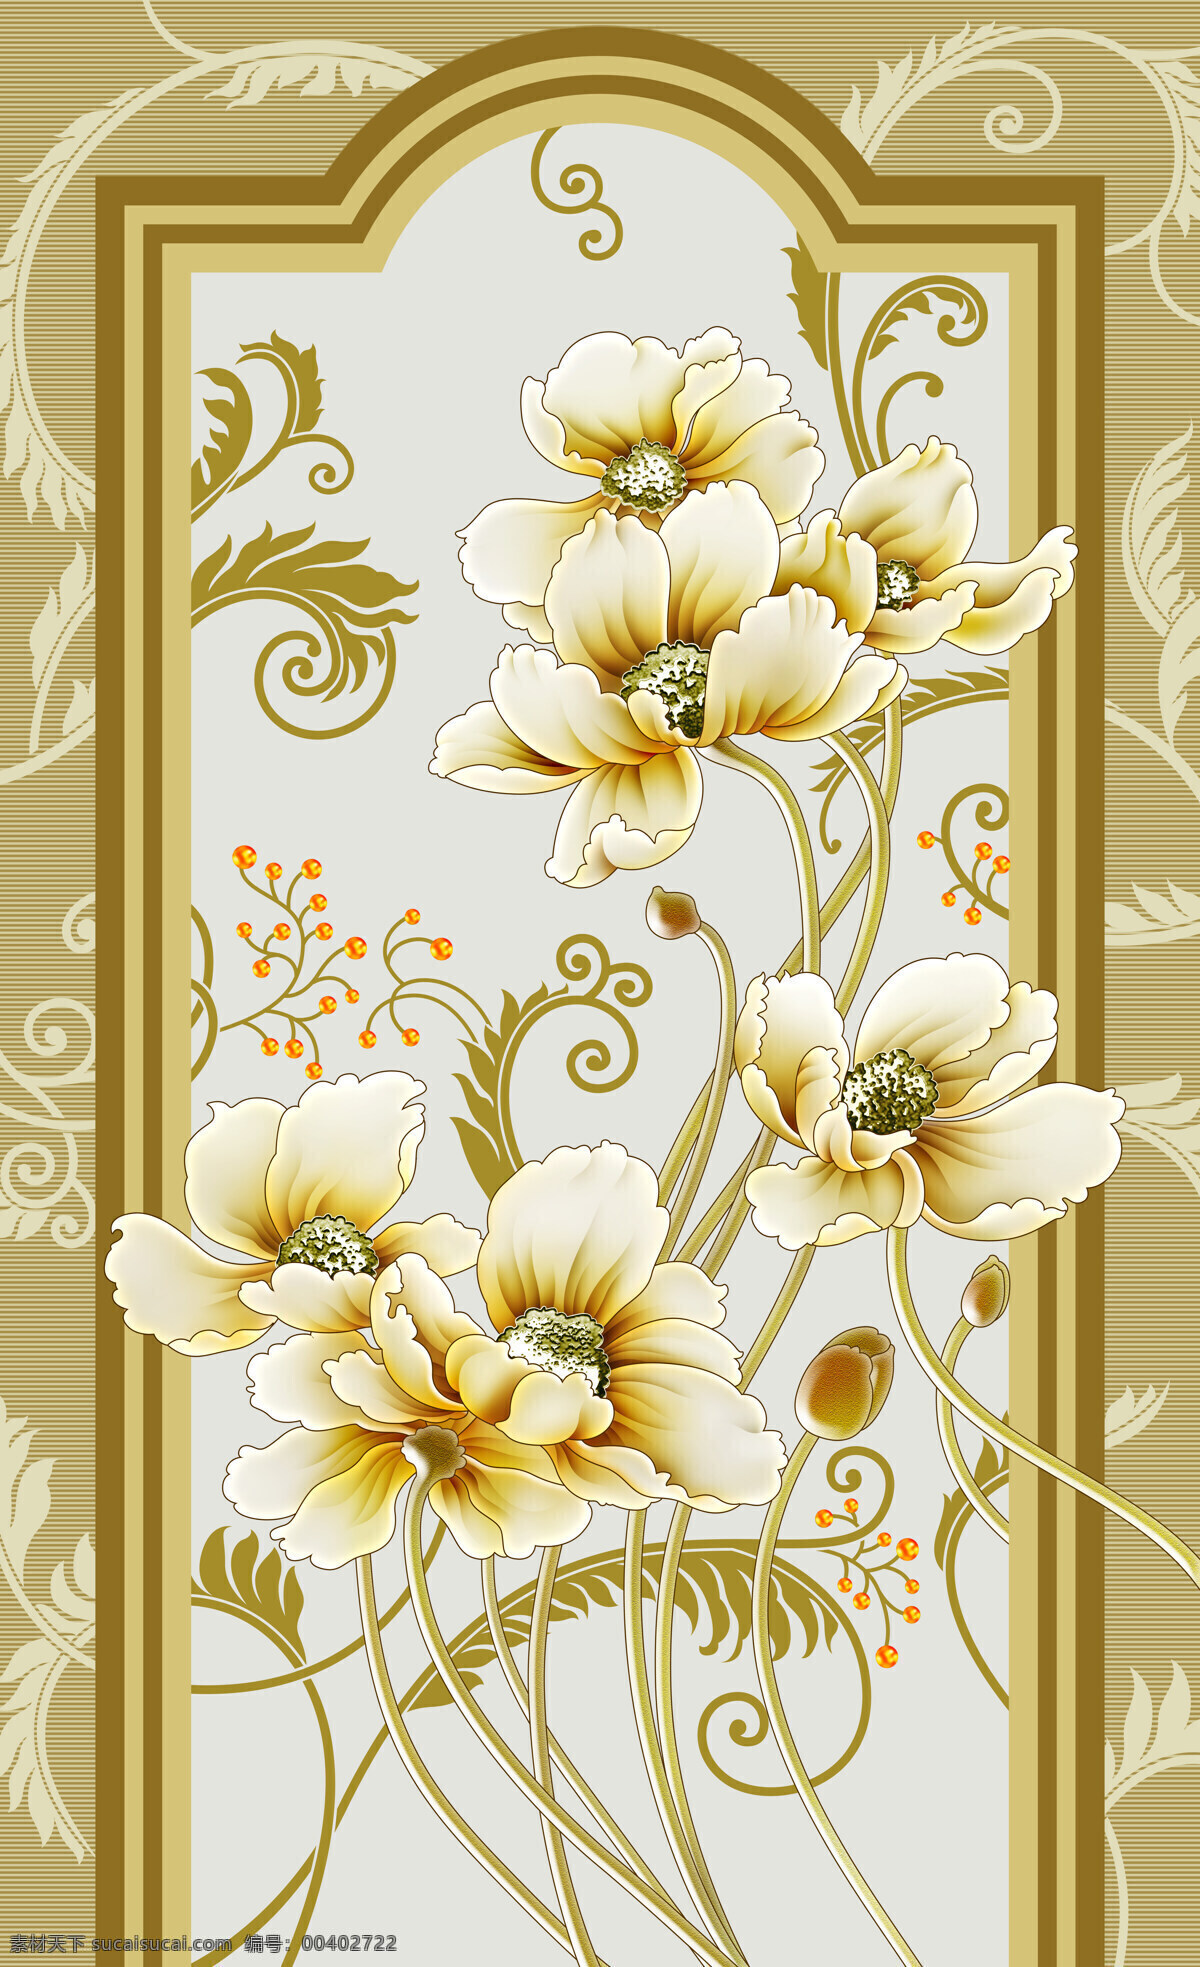 彩绘 3d 立体 海棠花 素材图片 3d渲染 效果图 背景墙 现代 中式 瓷砖 挂画